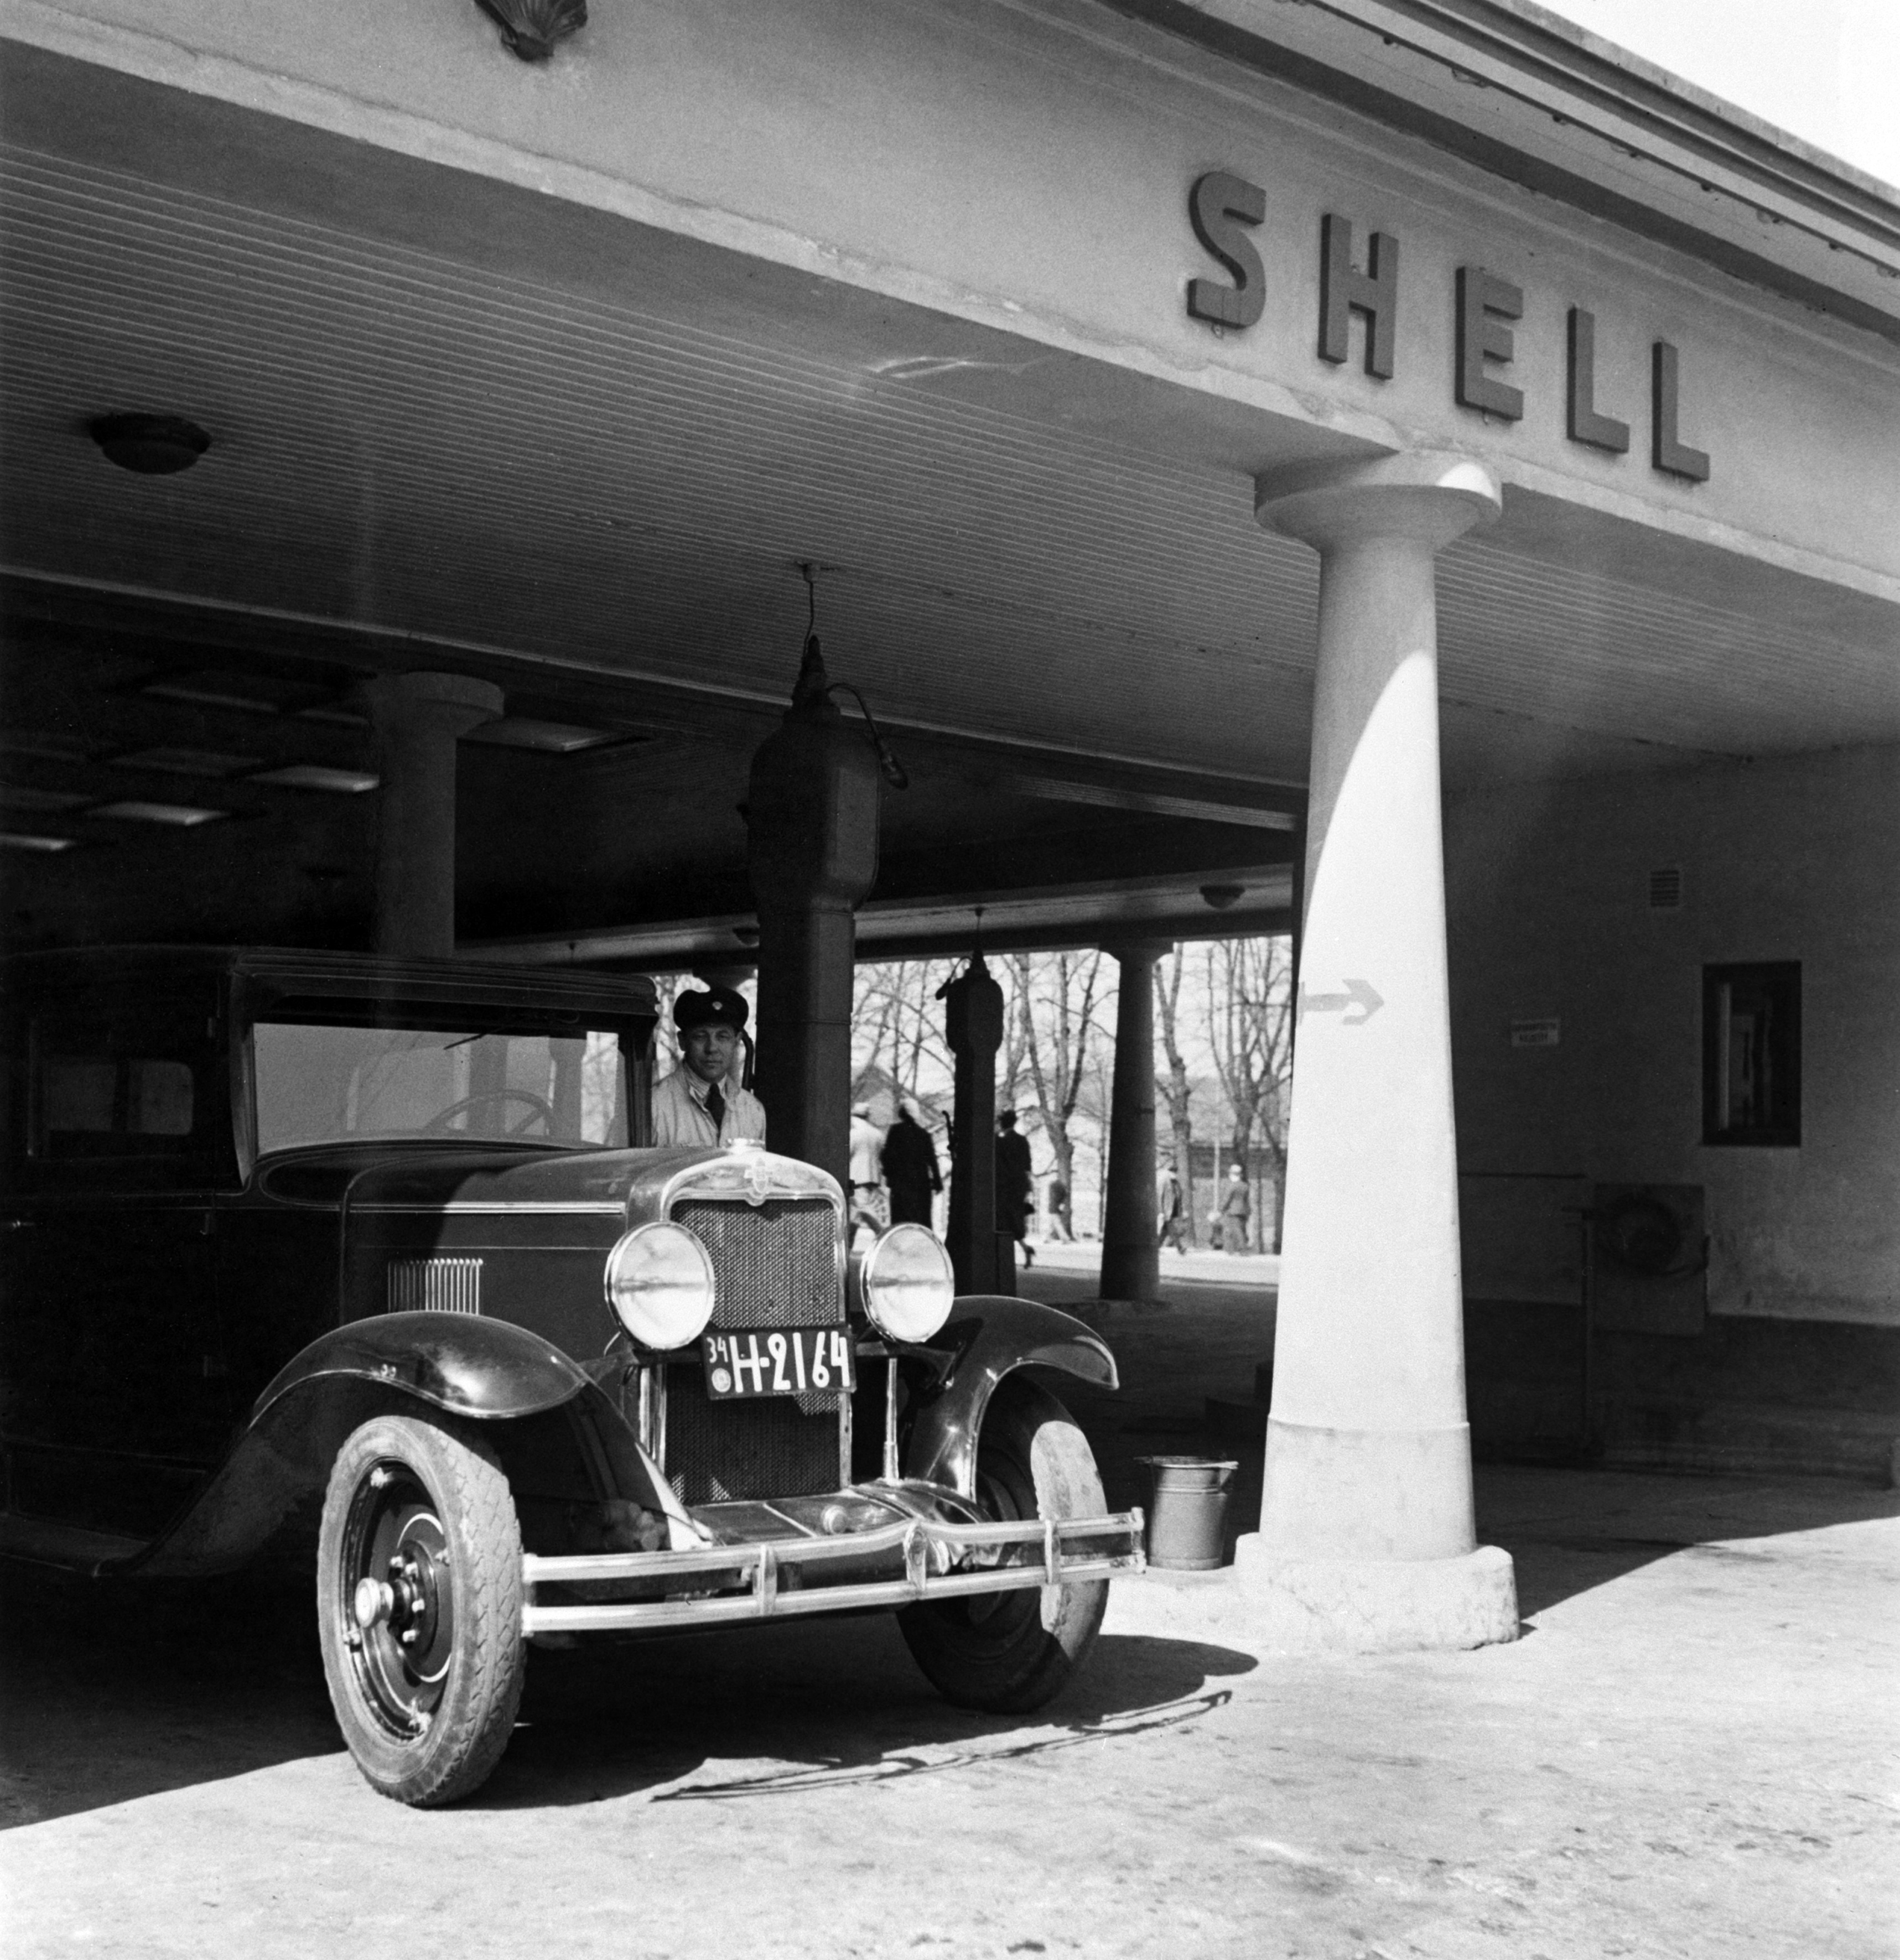 Oy Shell Ab:n huoltoasema, Turun kasarmi, Simonkatu 1 - Heikinkatu 28 (Mannerheimintie 22-24). Rakennettu 1928, purettu 1934. Auto huoltamon katoksen alla.